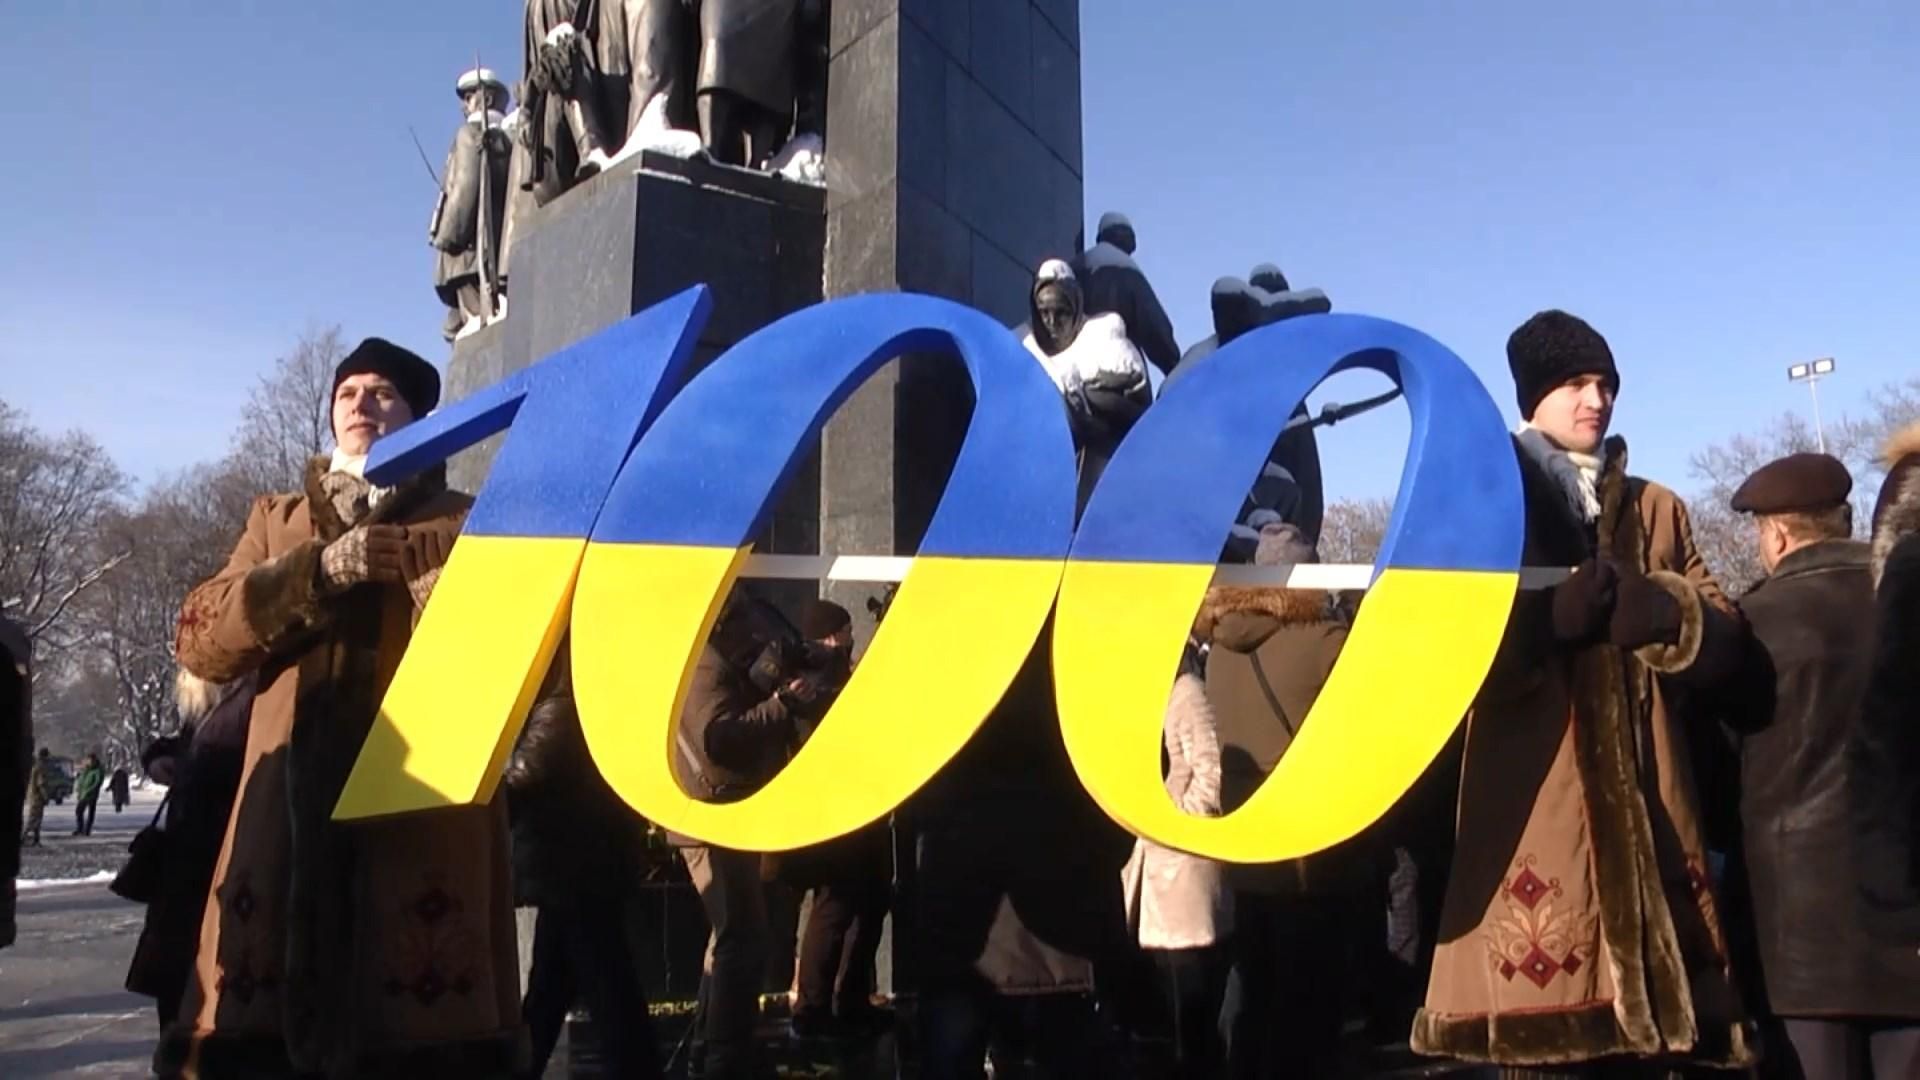 Не только обведена одной границей, а действительно Единая: как отмечали 100 лет Соборной Украины